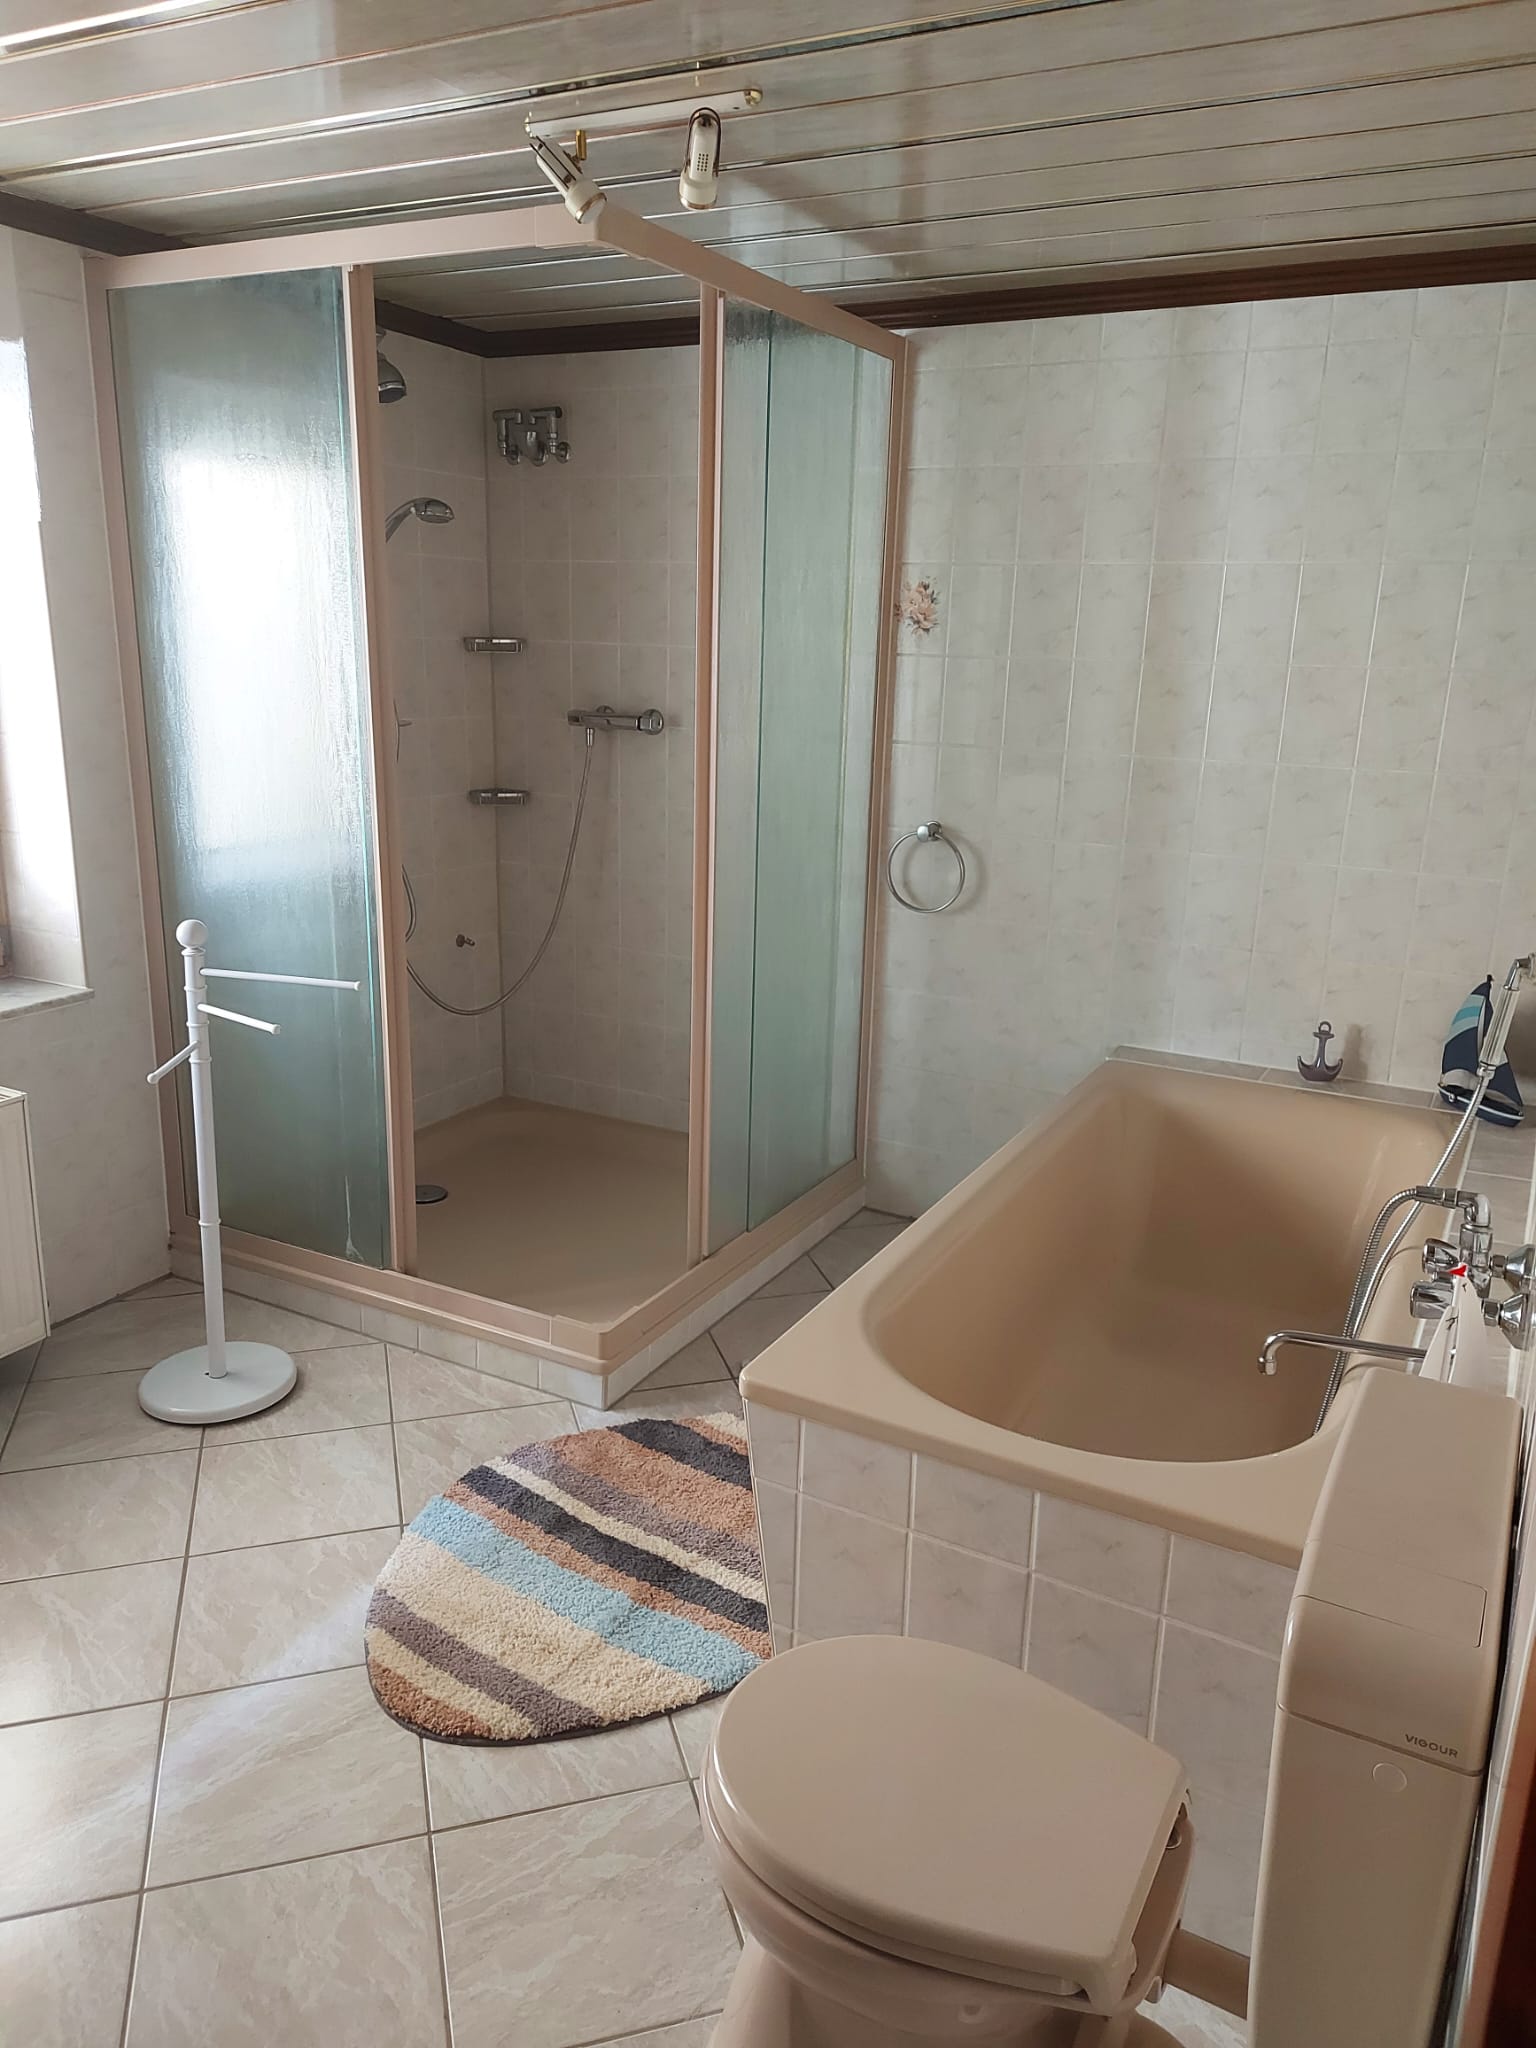 Badezimmer Waschbecken Dusche Toilette großer Spiegelschrank im Badezimmer